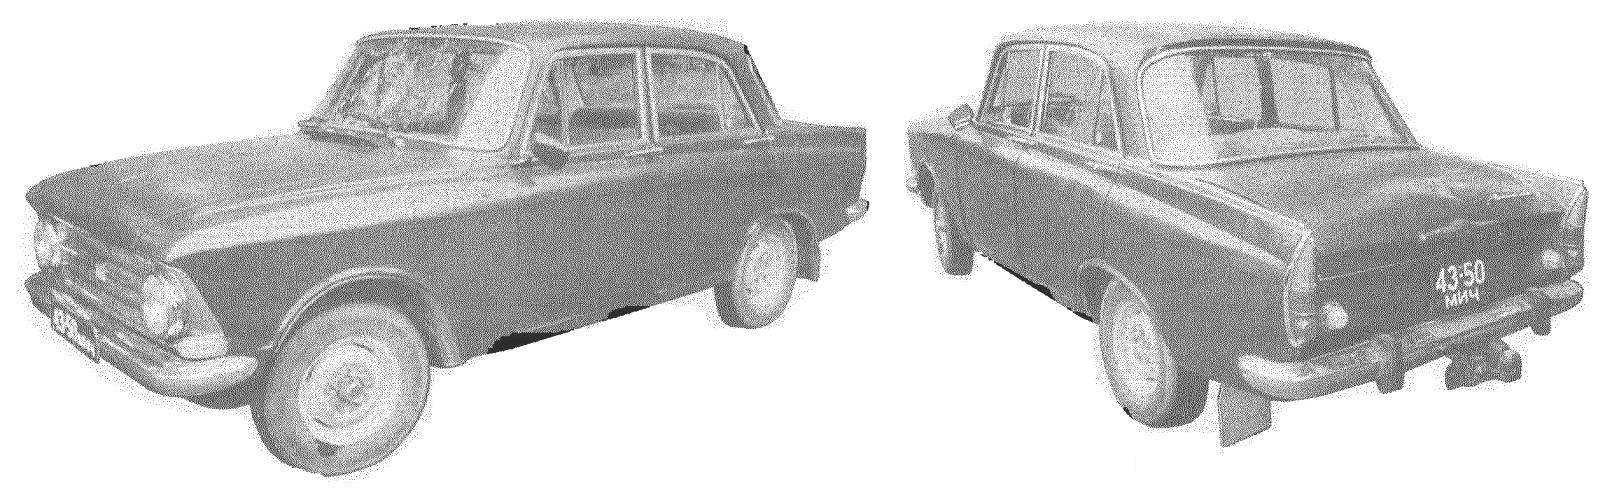 Четырехдверный седан «Москвич-408» выпуска 1964 года